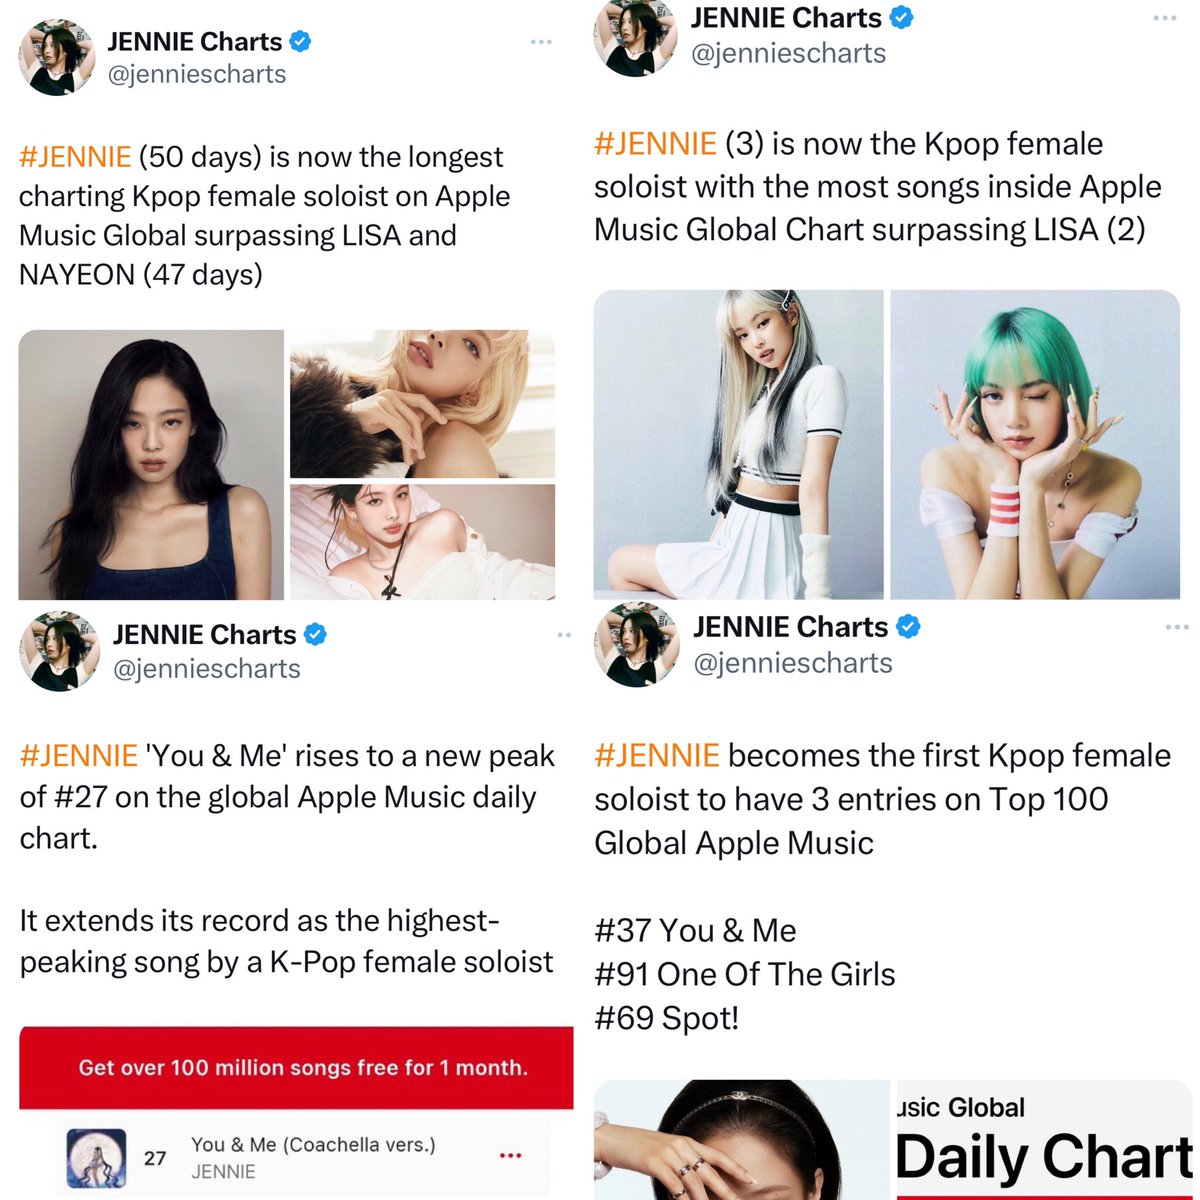 jennie apple music tarihinde en basarili kpop kadin soloisti oldu gecmedigi rekor birakmayacak albumden once kafaya koydu